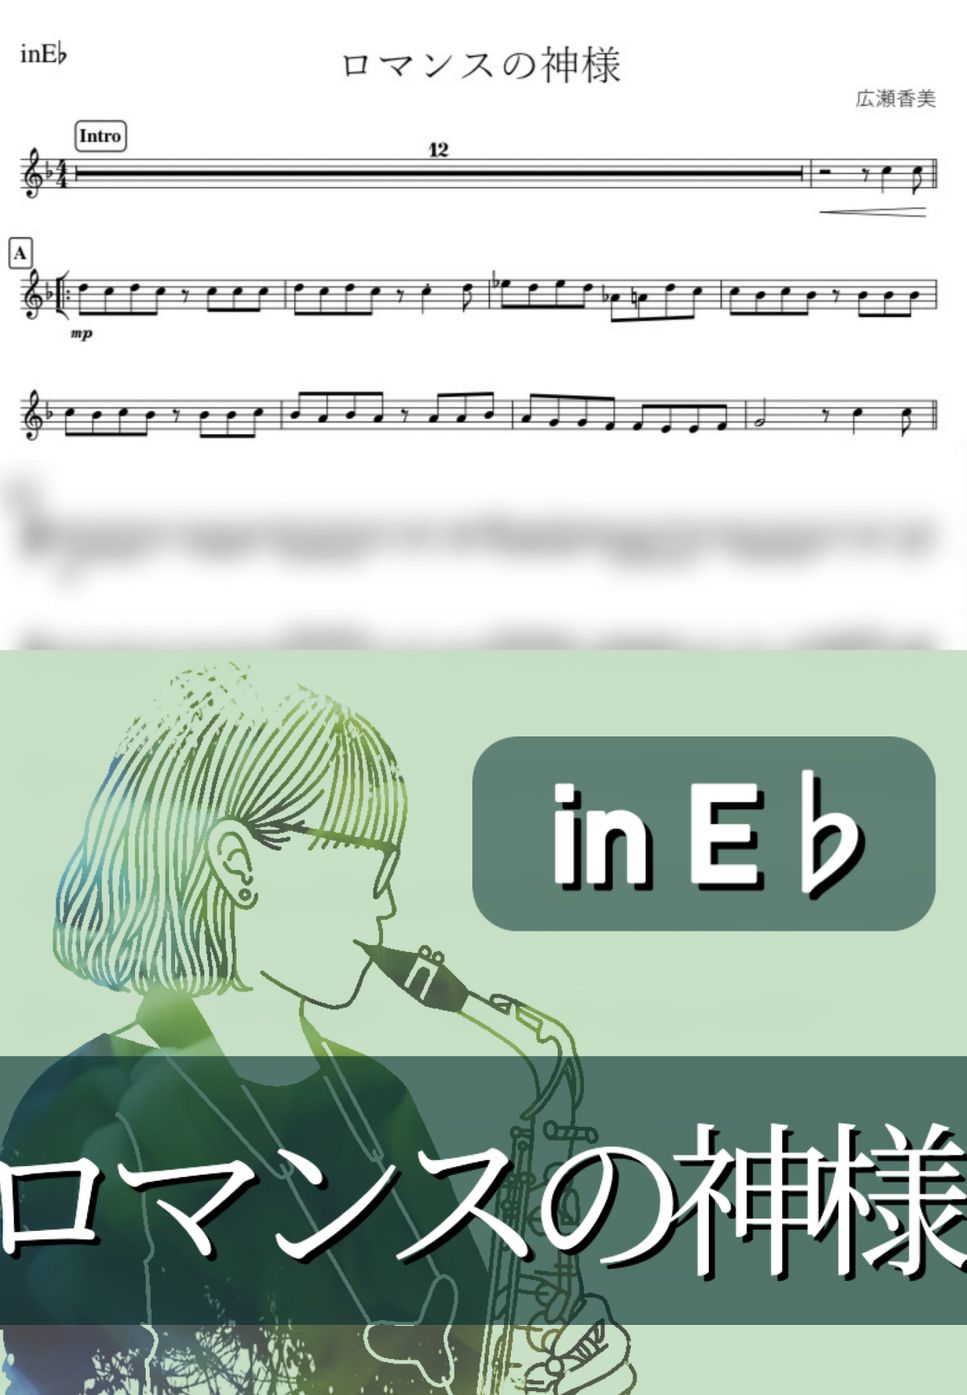 広瀬香美 - ロマンスの神様 (E♭) by kanamusic